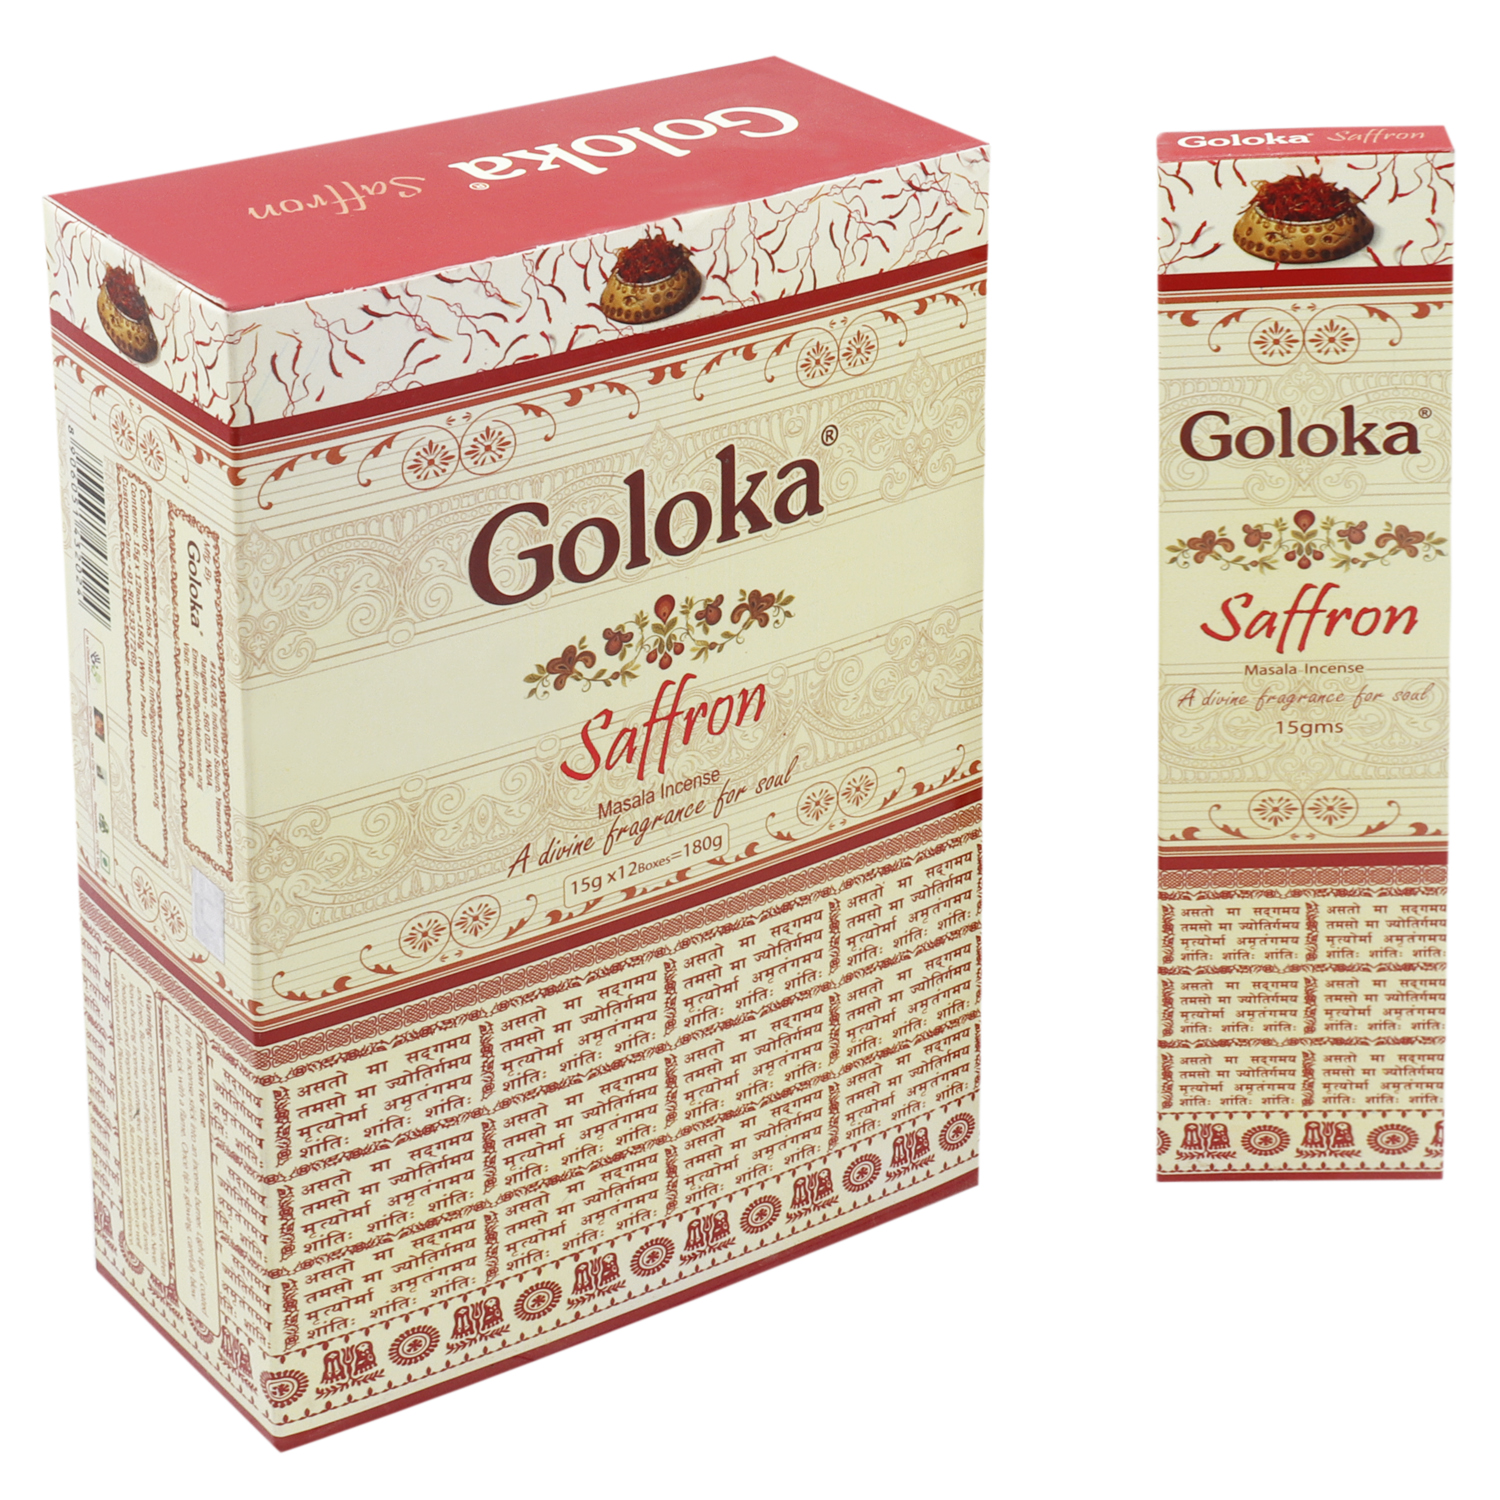 GOLOKA SAFFRON 15 GM